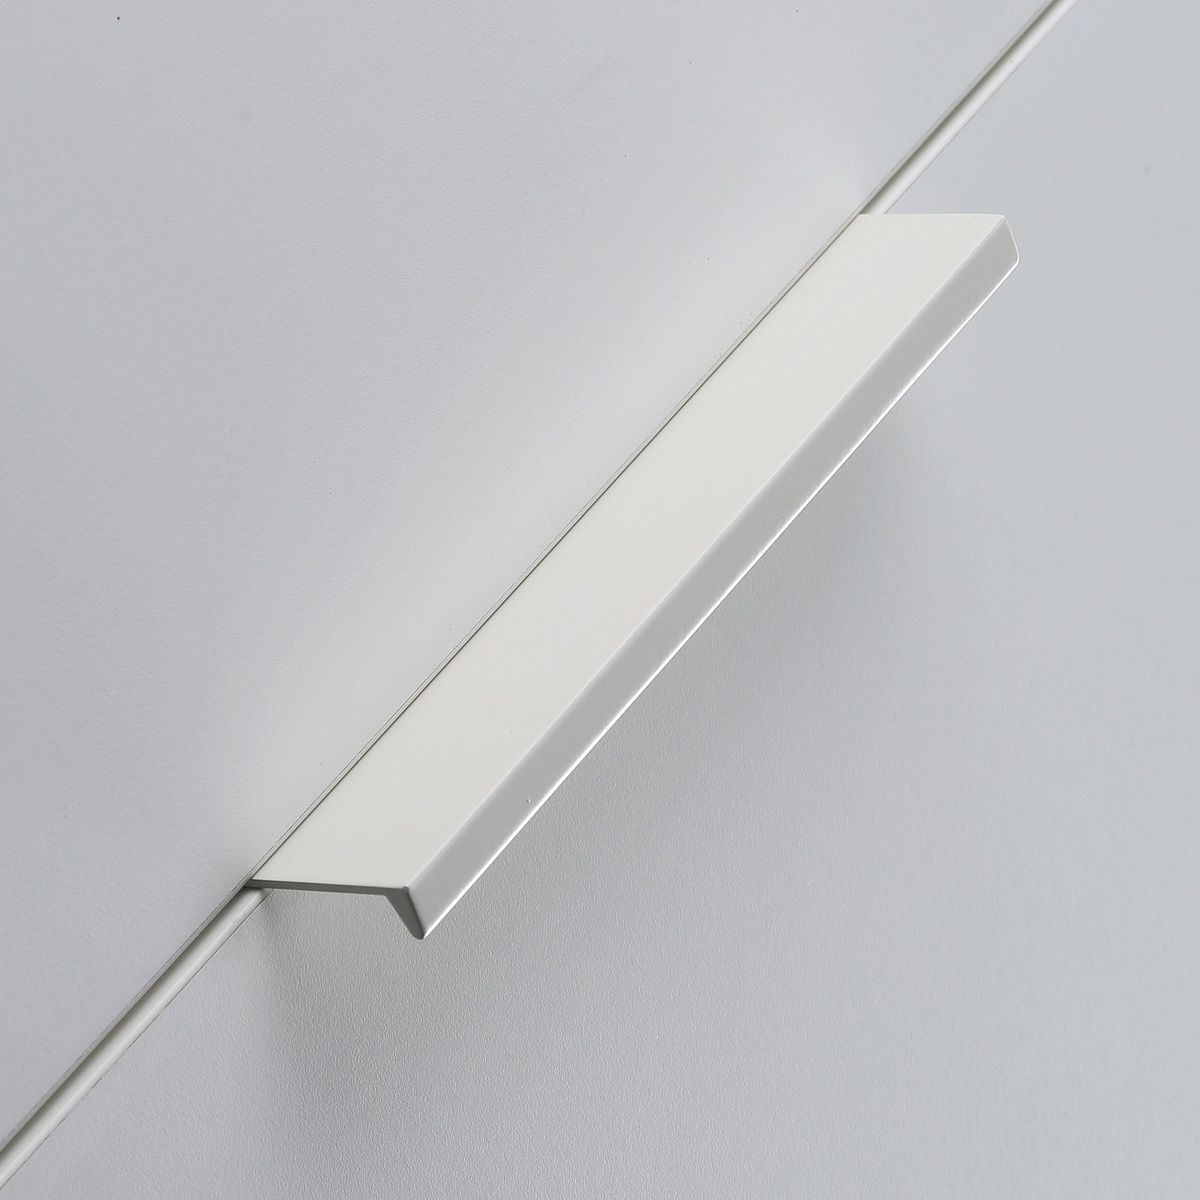 Ручка мебельная алюминиевая HEXI 192мм/225мм, белый матовый GTV 16706 Ручка мебельная алюминиевая HEXI 192мм/225мм, белый матовый - фото 5